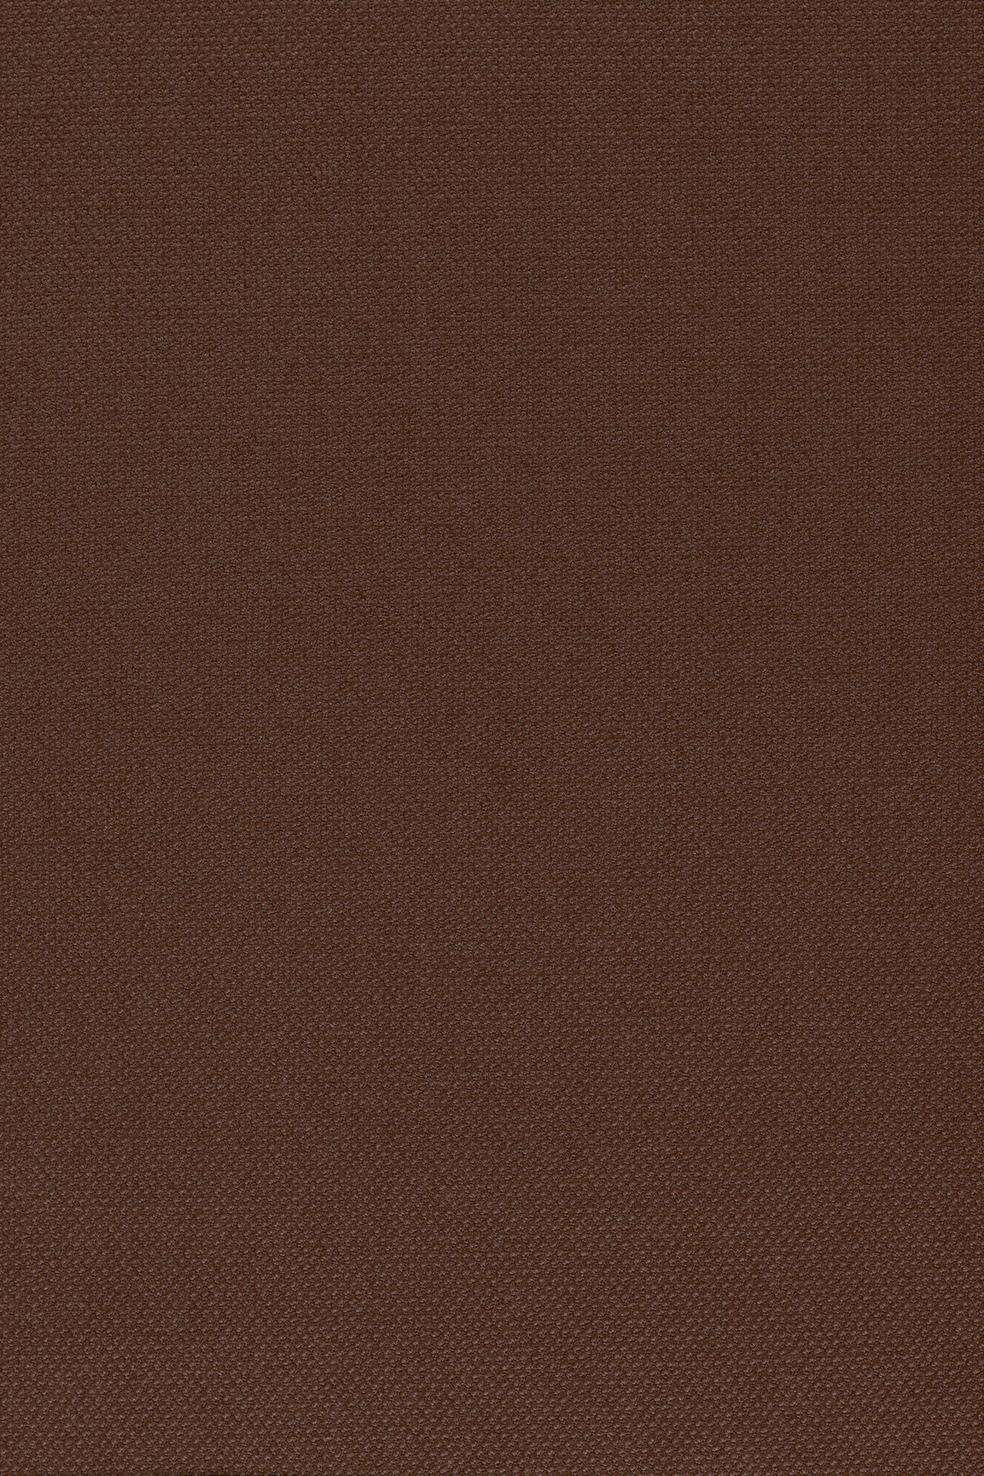 Fabric sample Steelcut 2 365 brown